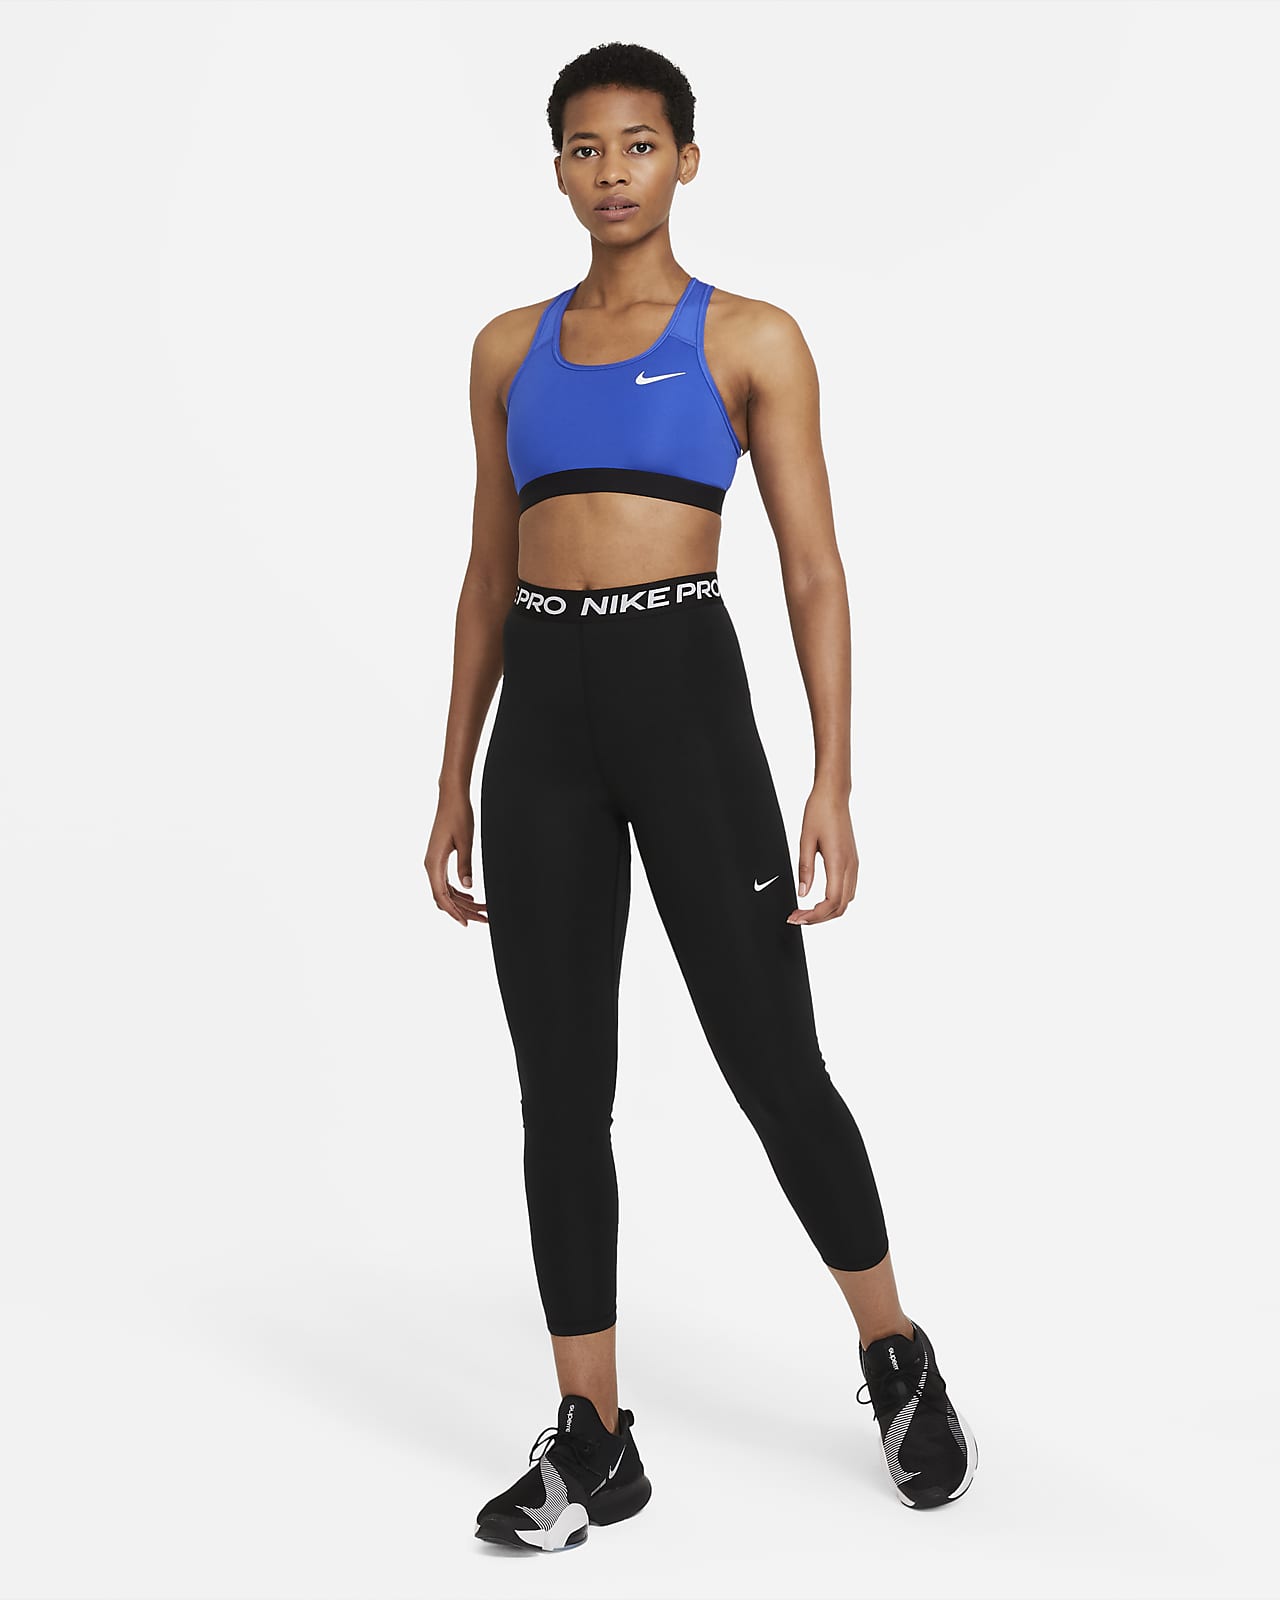 Nike Pro 365 Women's High-Waisted 7/8 Mesh Panel Leggings. Nike BG